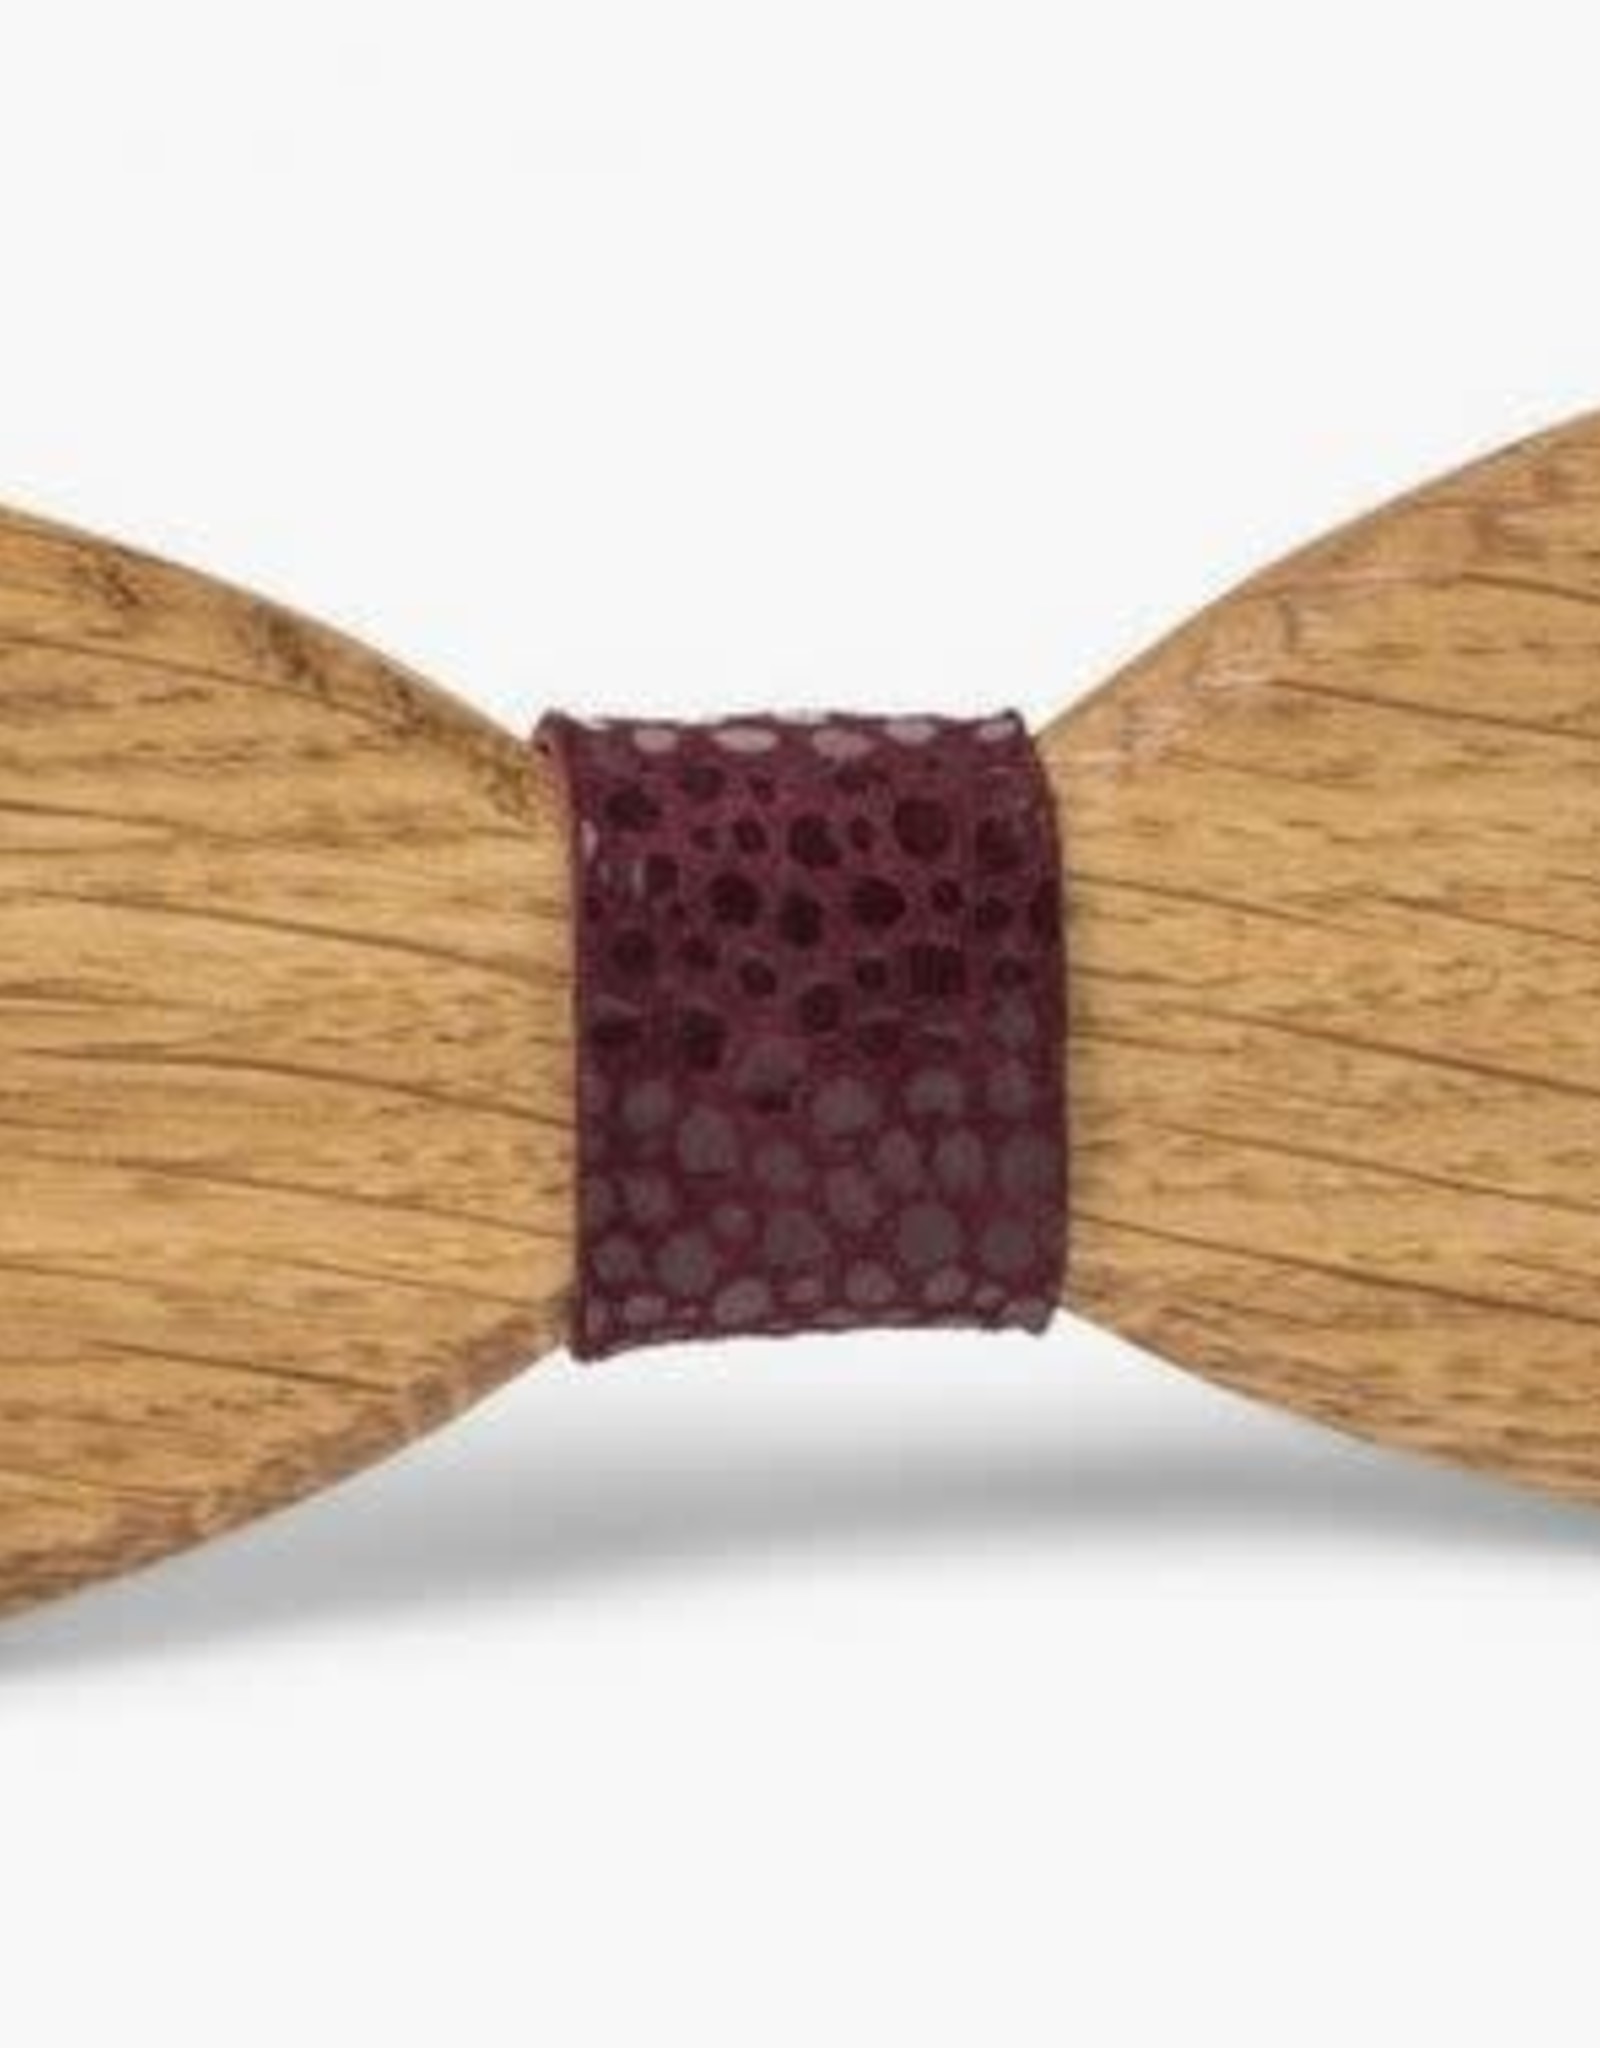 Les Nœuds du Pap's Light Wood Bow Tie